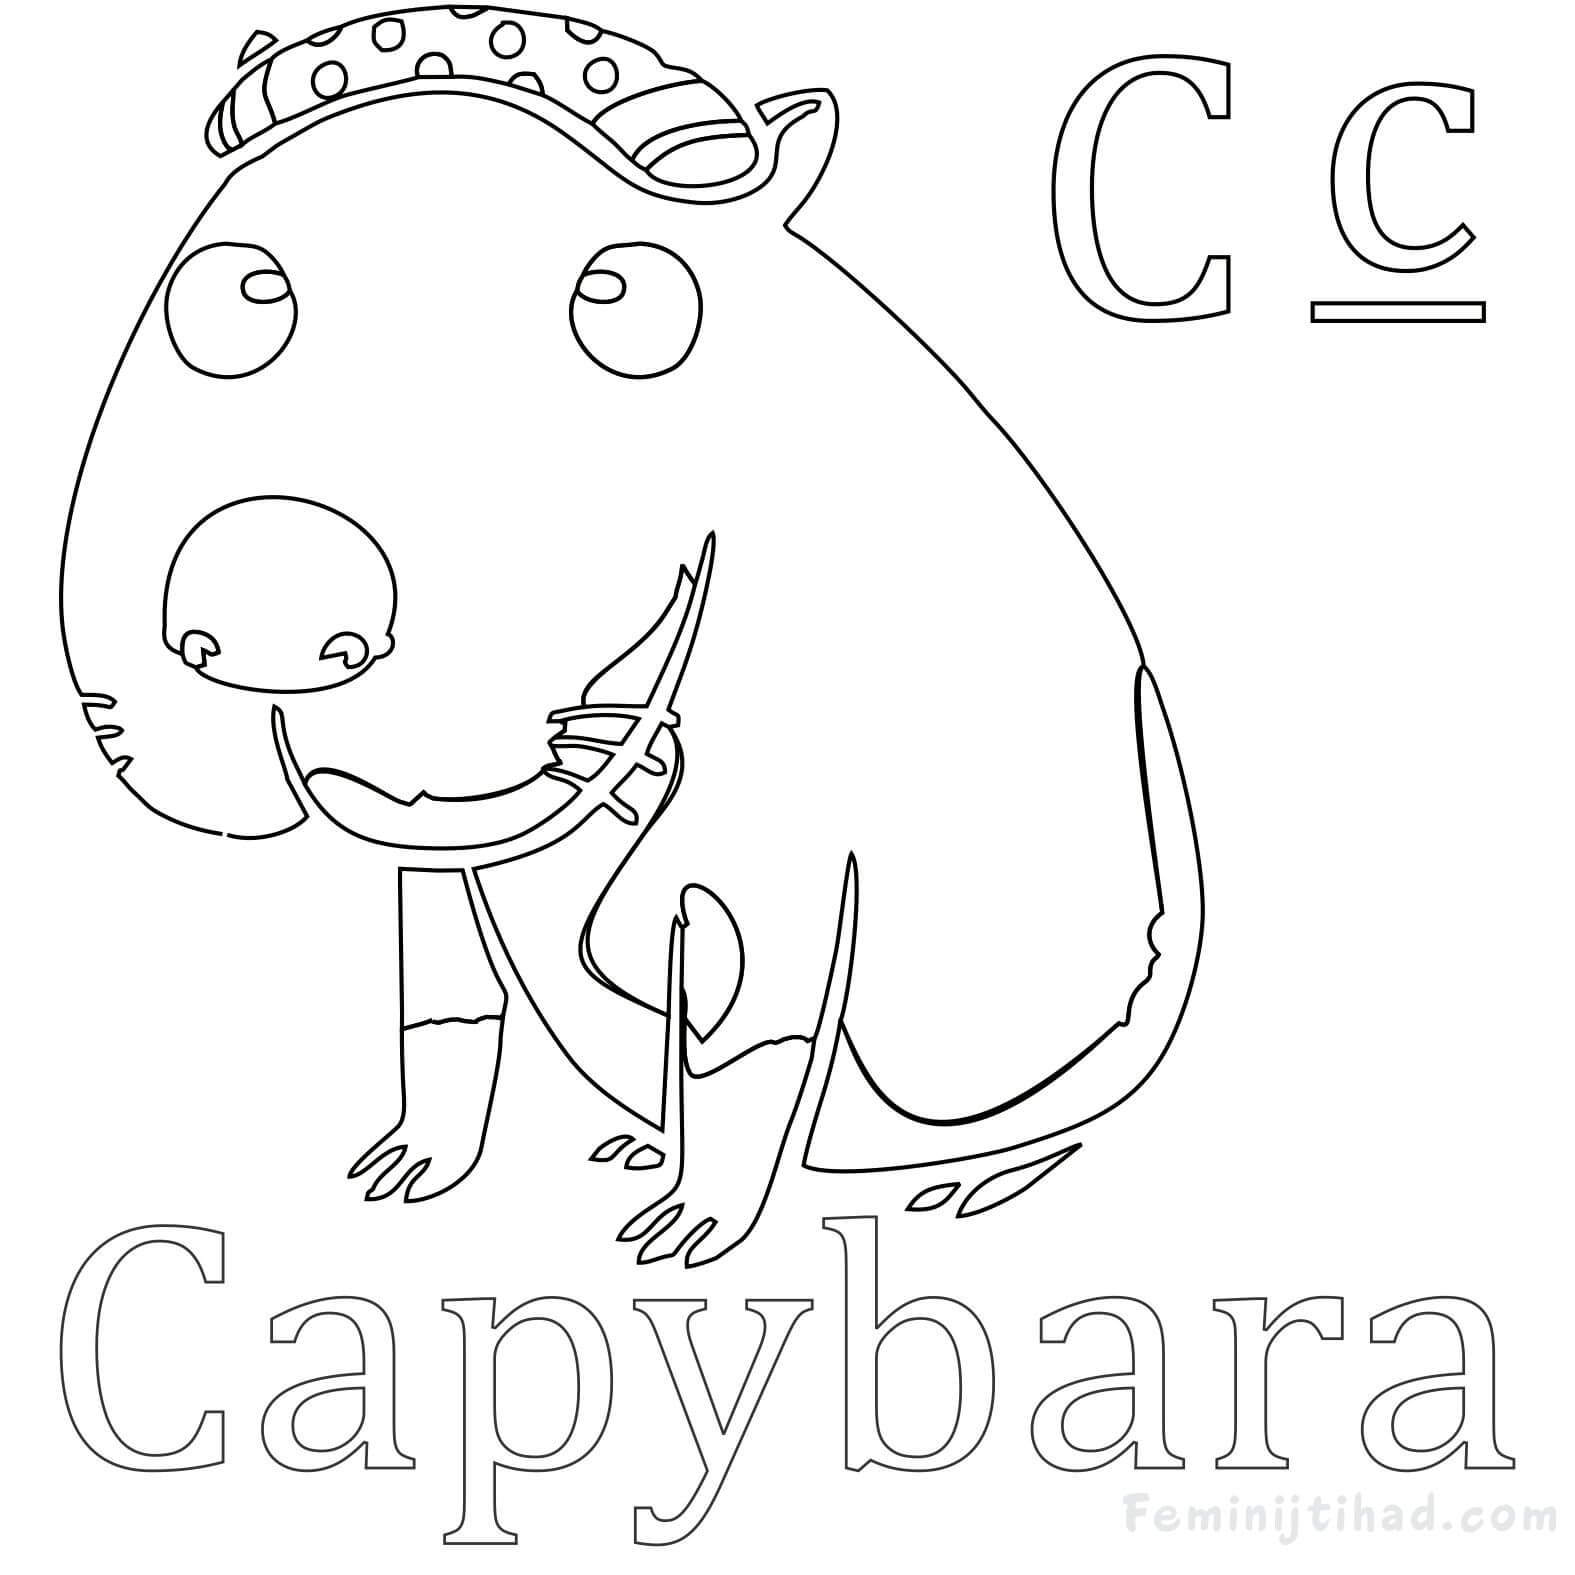 Capybara Coloring Page Free